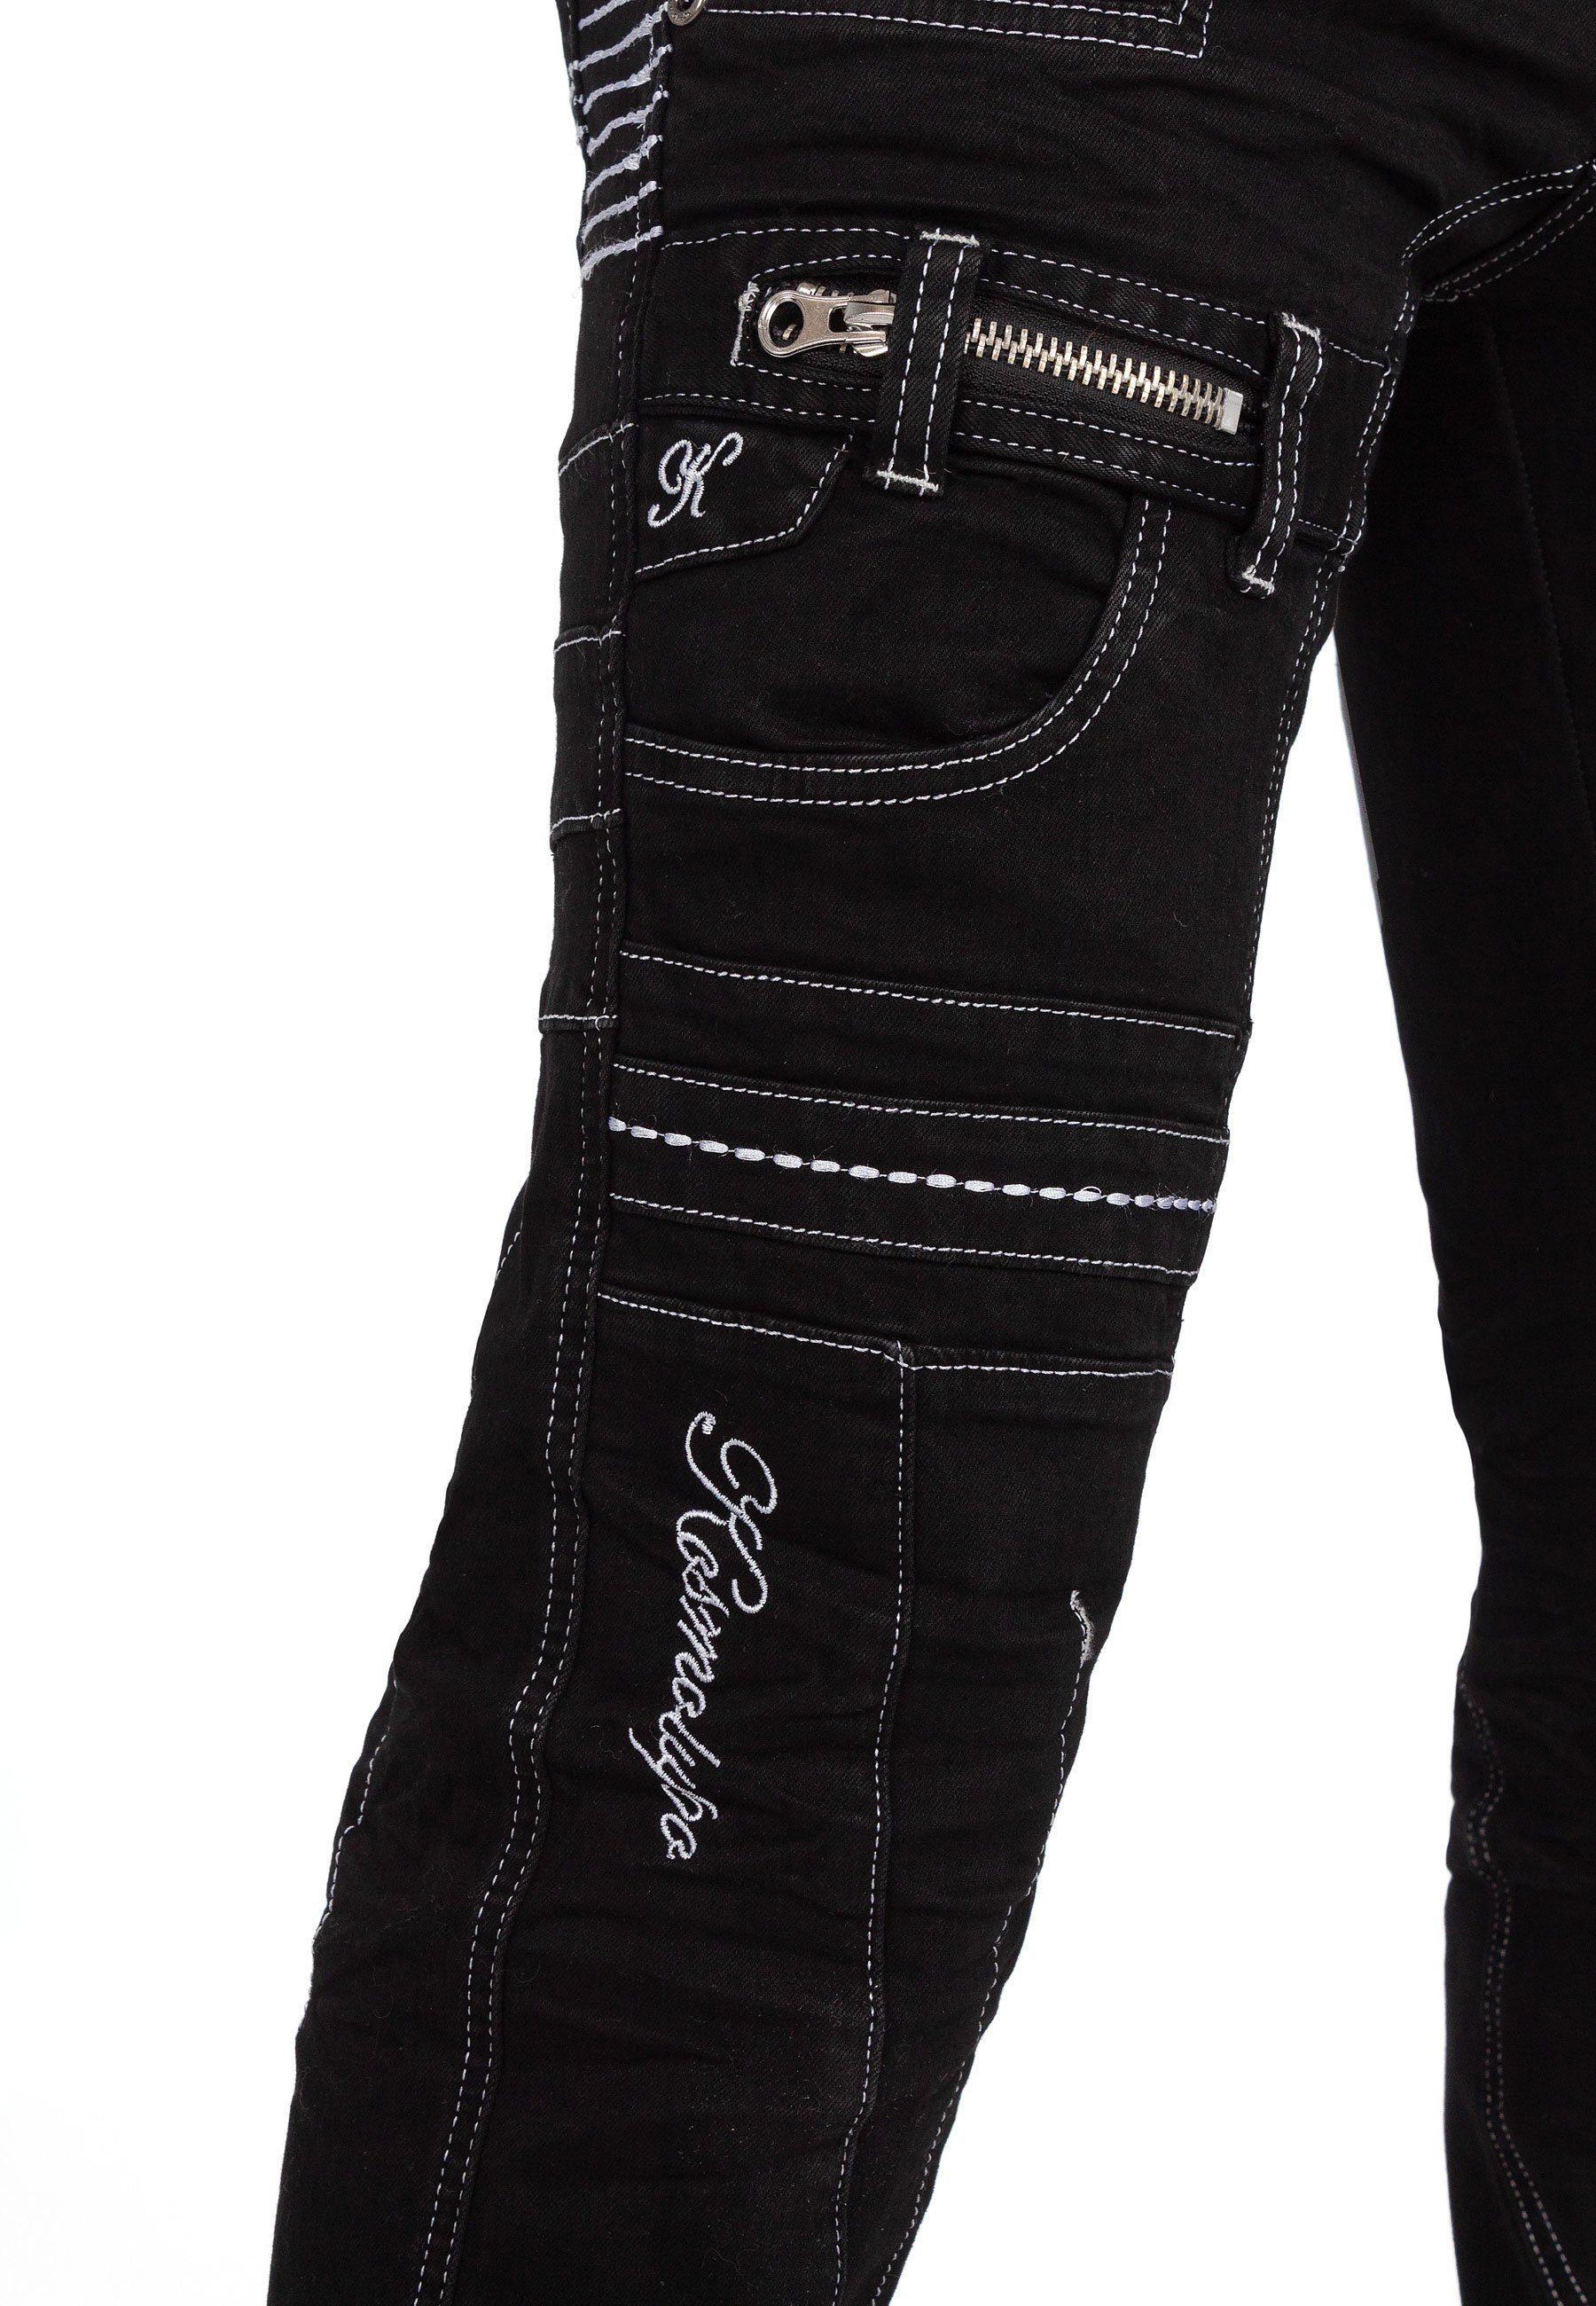 BA-KM020-1 Kosmo Auffällige Lupo Hose 5-Pocket-Jeans mit Herren aufgesetzten Applikationen